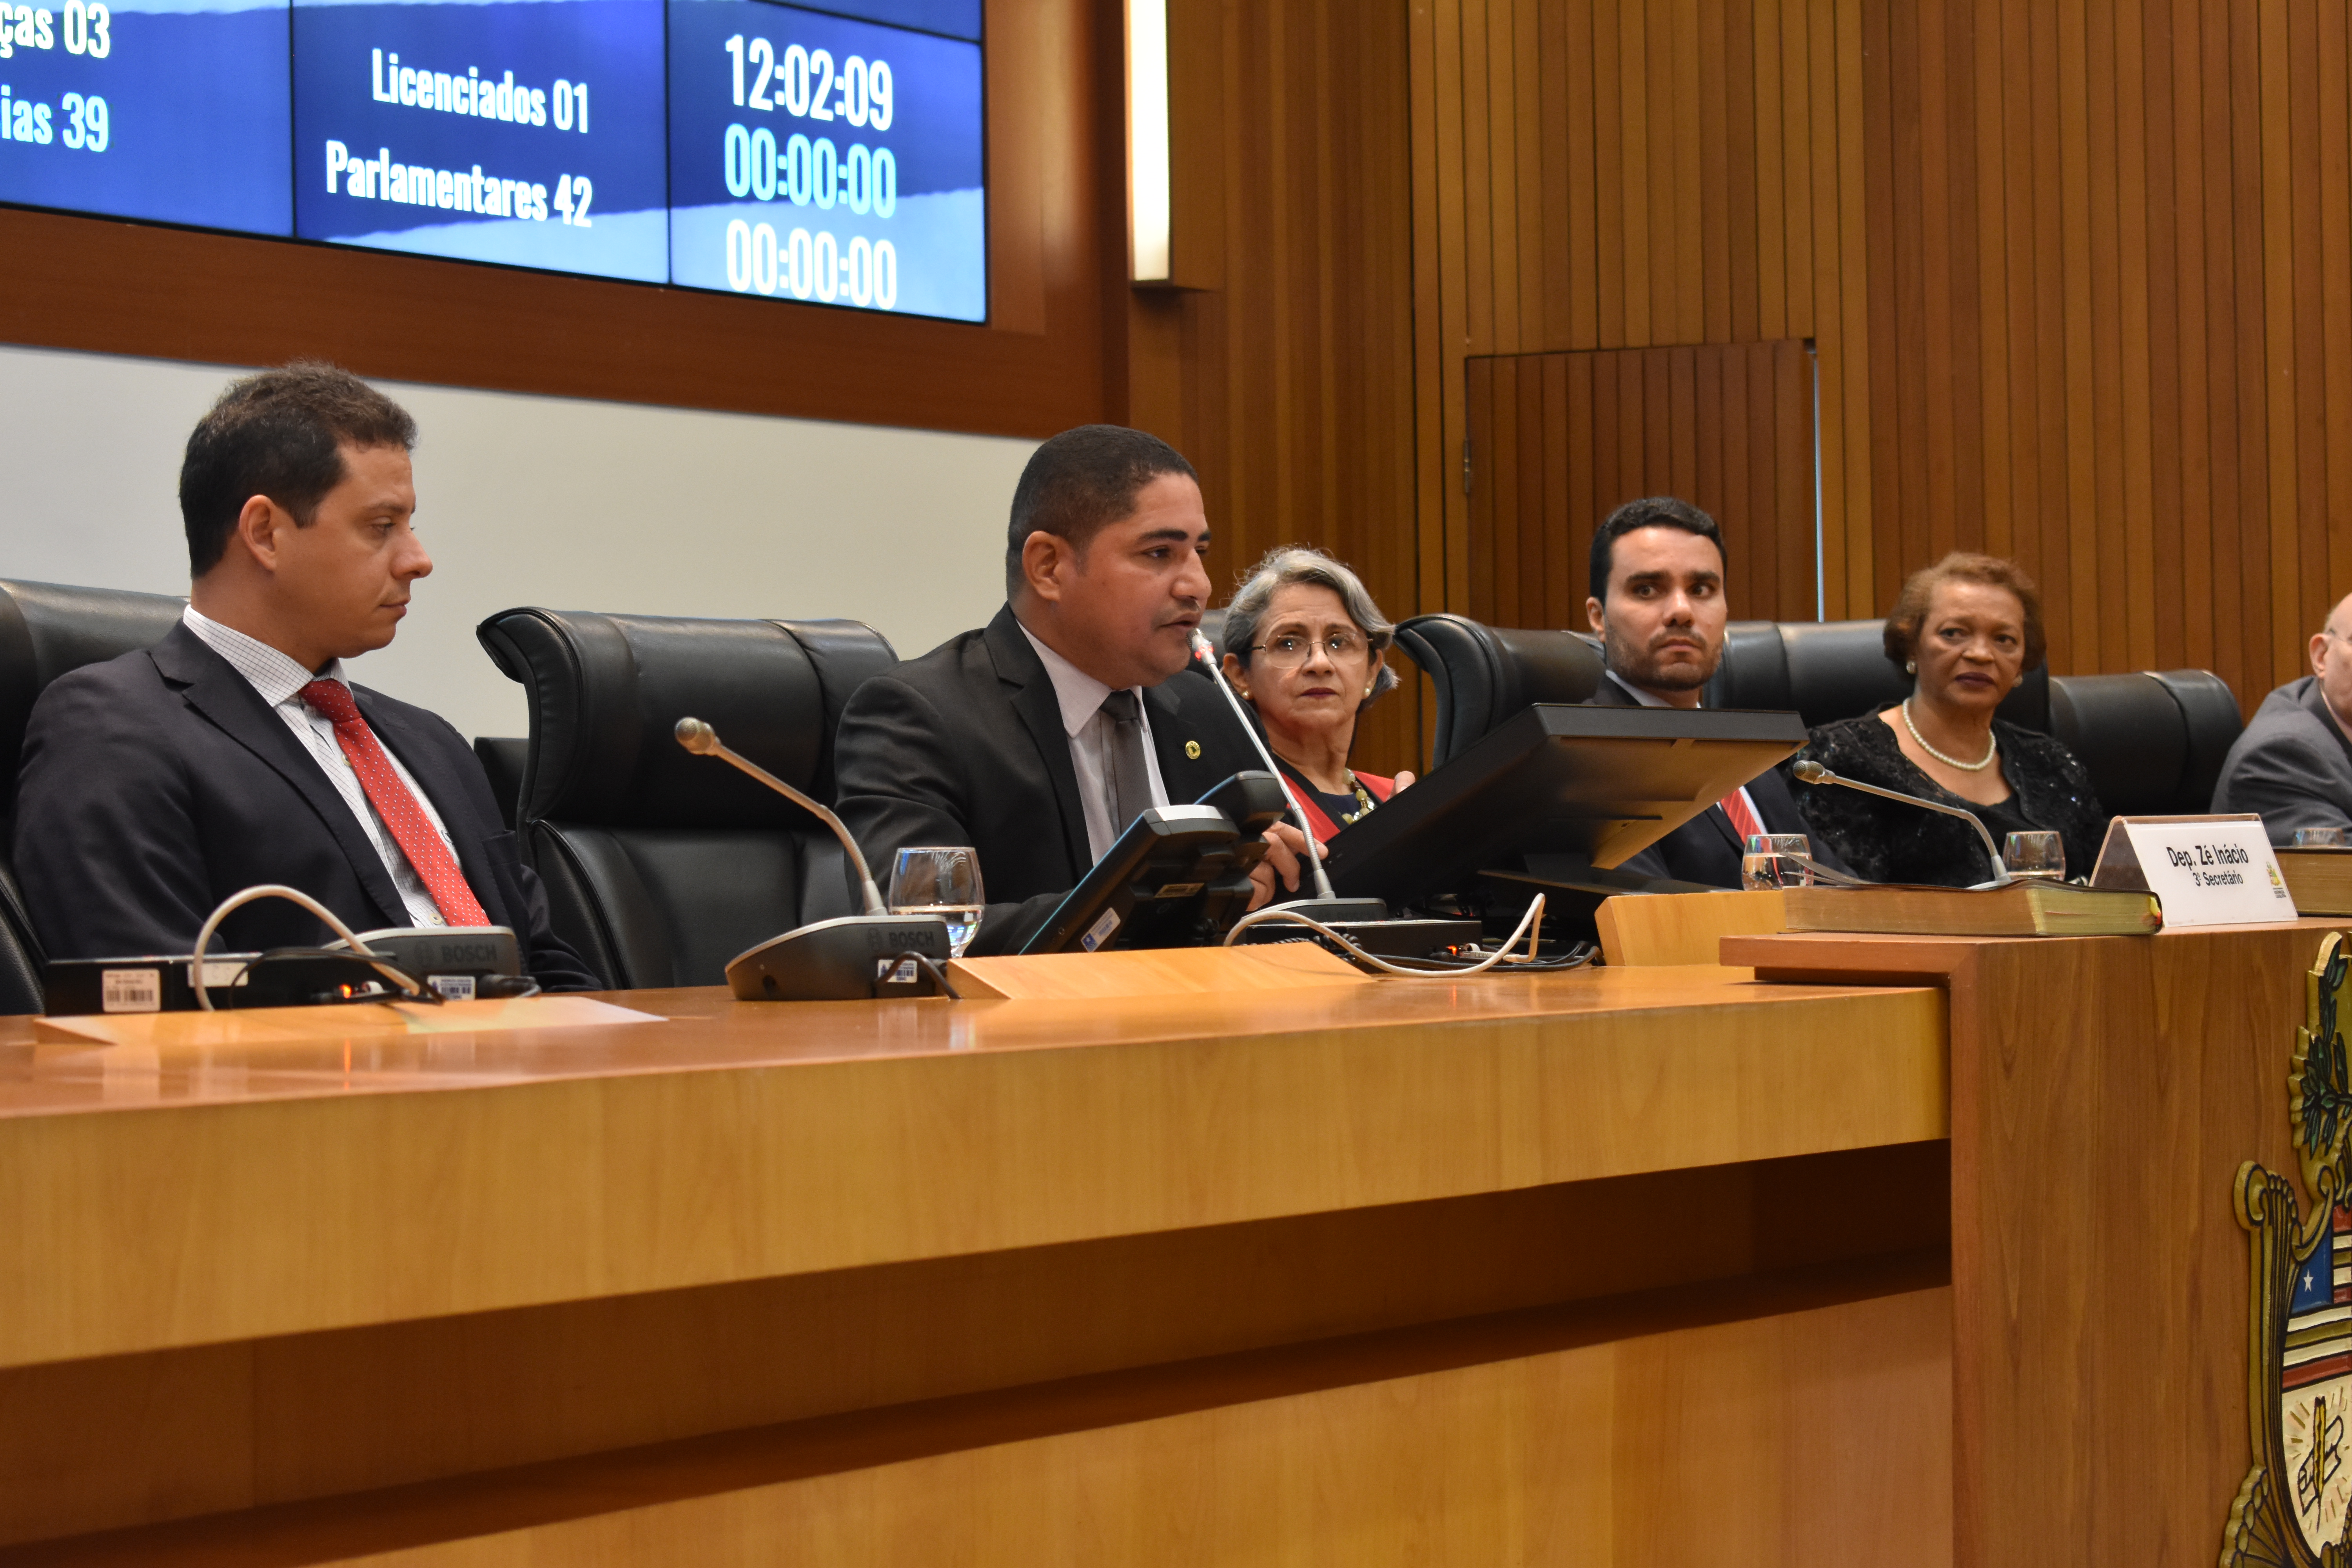 Zé Inácio preside sessão em homenagem aos 100 anos do curso de Direito da UFMA